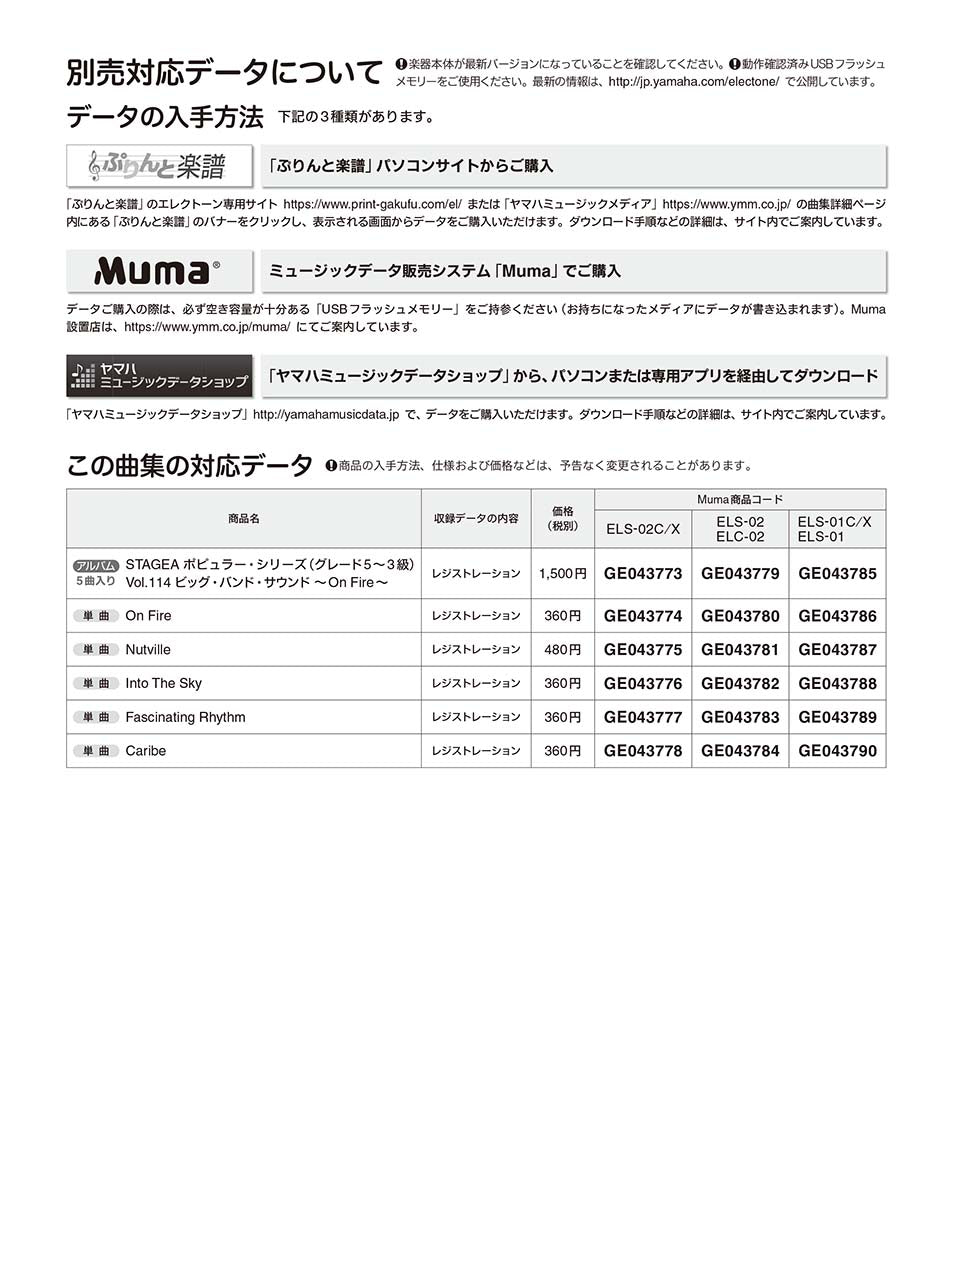 STAGEA ポピュラー 5～3級 Vol.114 ビッグ・バンド・サウンド ～On Fire～_1